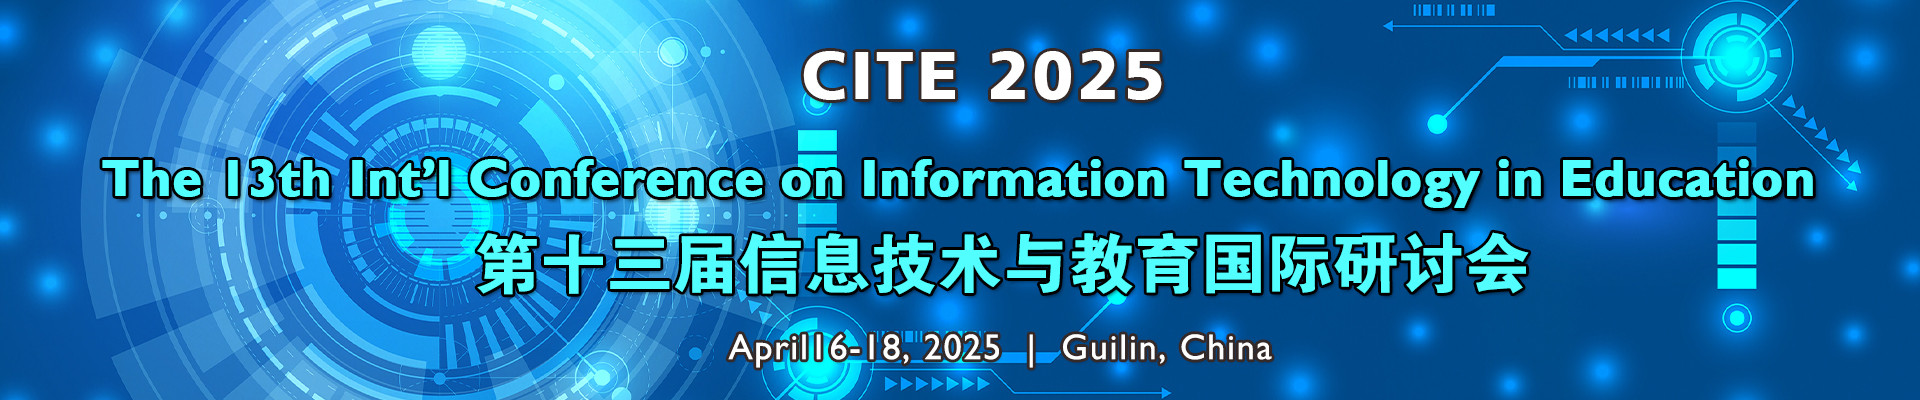 第十三届信息技术与教育国际研讨会(CITE 2025)